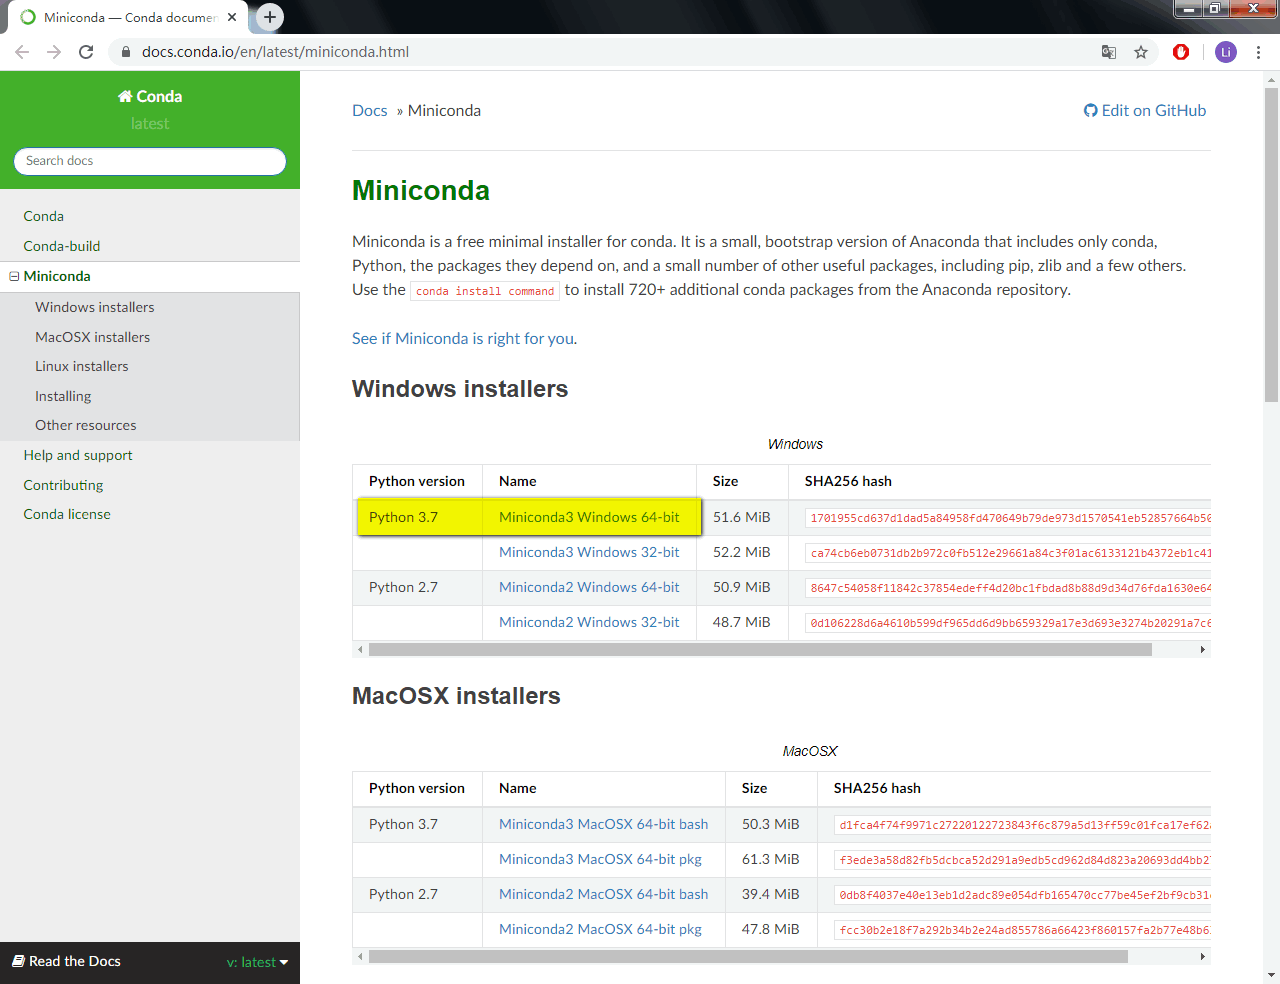 下载<a href="https://docs.conda.io/en/latest/miniconda.html">Miniconda</a>.<br><br>我装的是<code>Python 3.7</code>的<code>Miniconda3 Windows 64-bit</code>, 目前版本为<code>Miniconda3 4.8.2</code>. 不再建议使用<code>Python 2.7</code>版本的了, 毕竟那个时代终会过去, 早点适应吧.<br><br>也可以安装Anaconda代替, 但我不使用Anaconda作为python环境, 只作为pymol的环境, 这样的话, Anaconda带有很多我不需要的功能, 太大了.